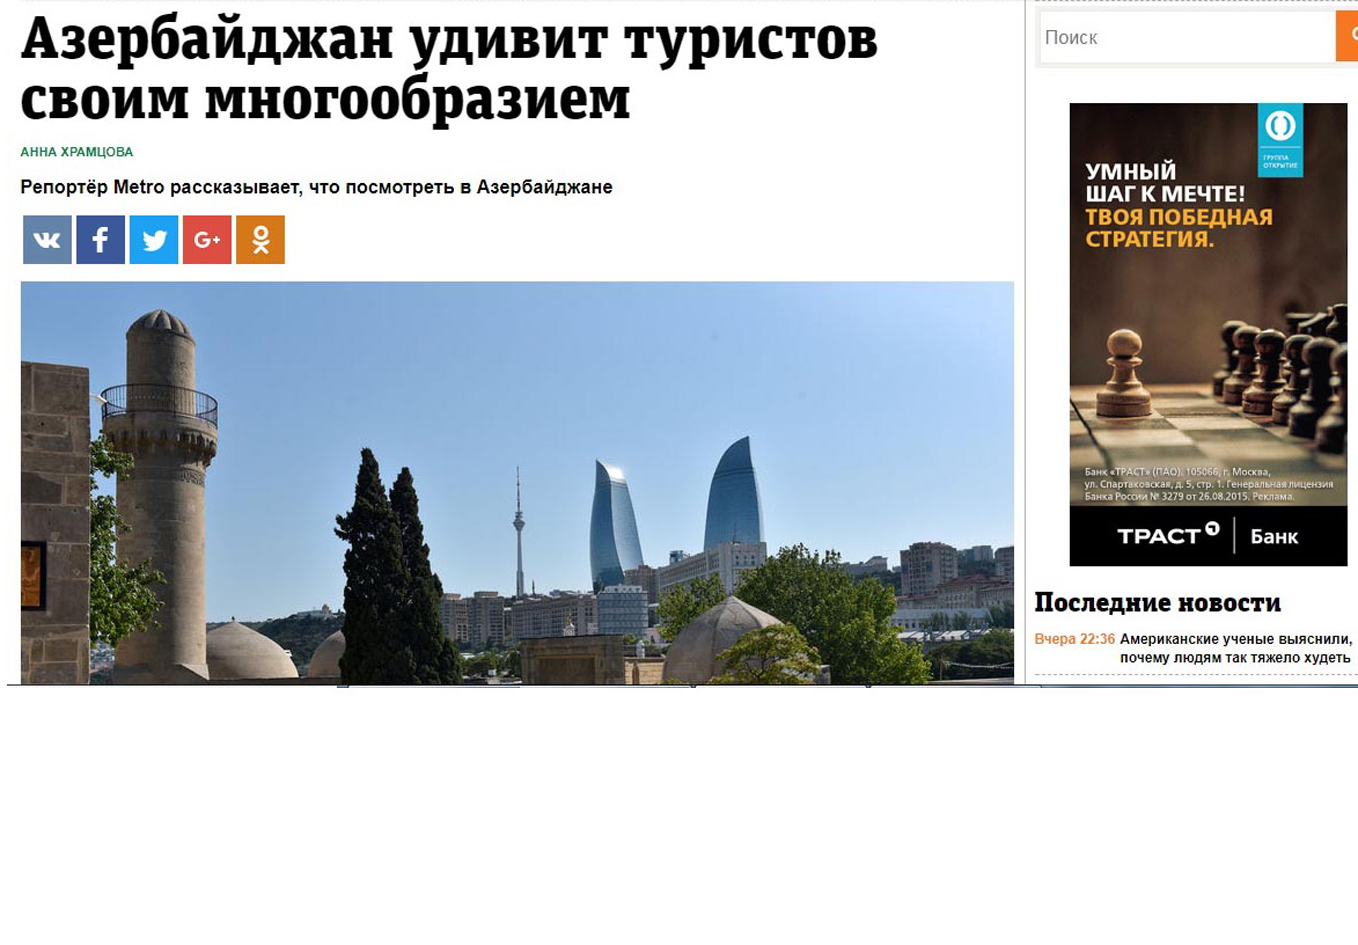 Metro: «Азербайджан влюбляетв себя с первого взгляда»